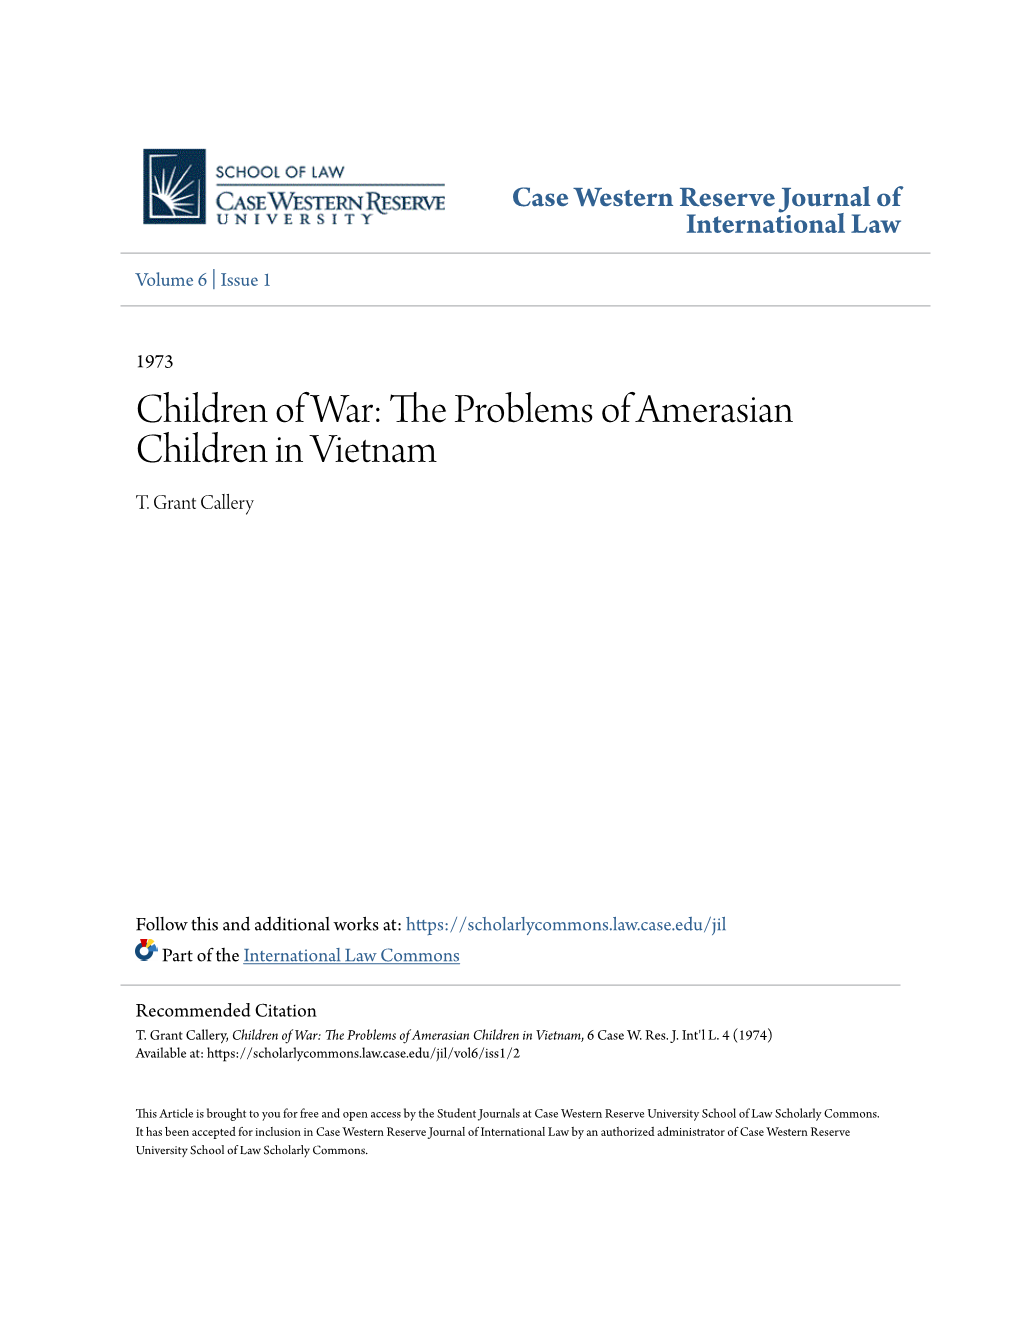 The Problems of Amerasian Children in Vietnam, 6 Case W